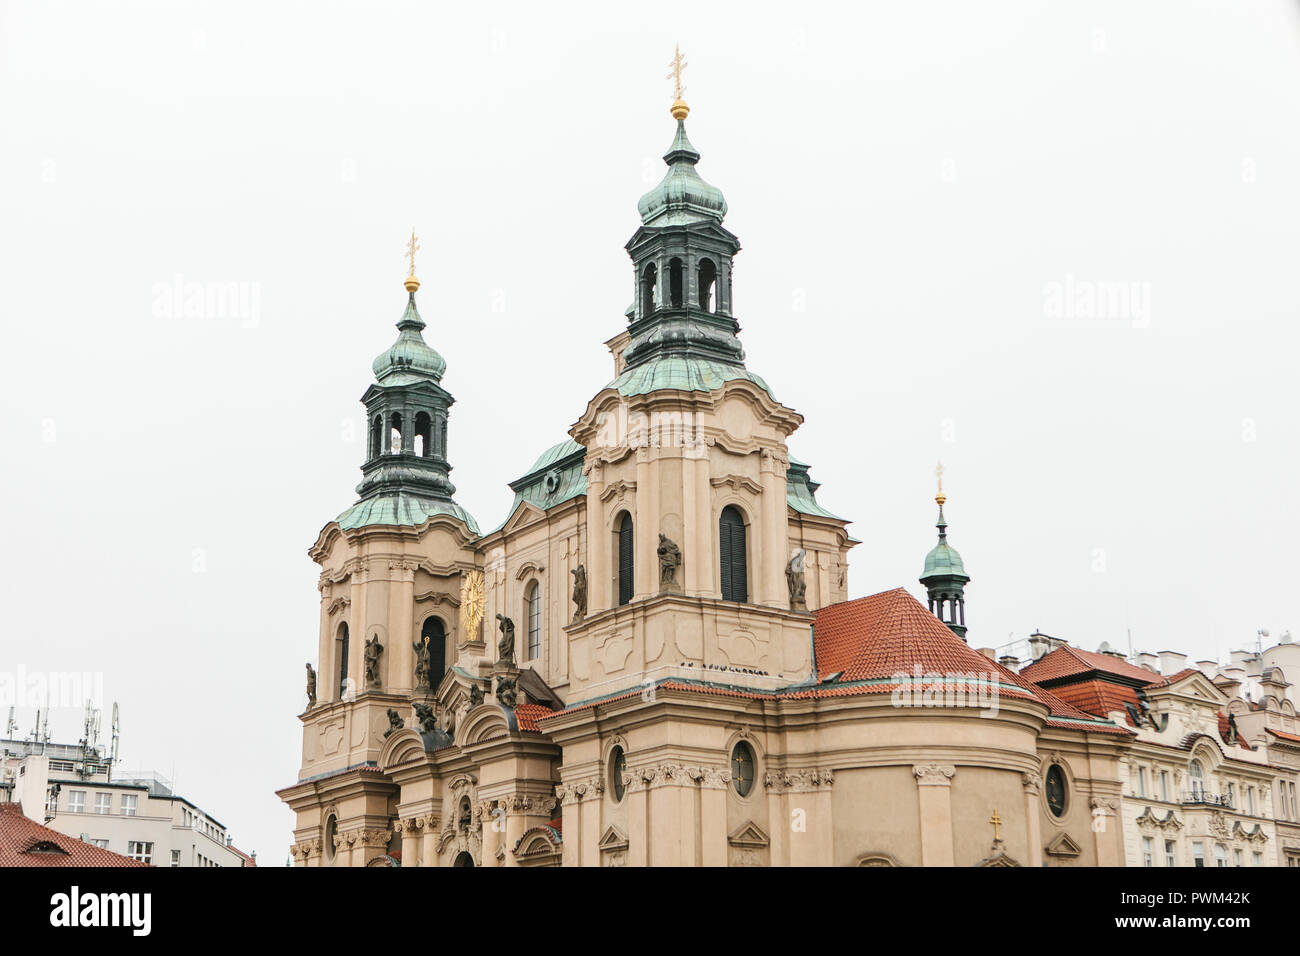 The Church of St. Nicholas in Prague in Czech Republic Stock Photo